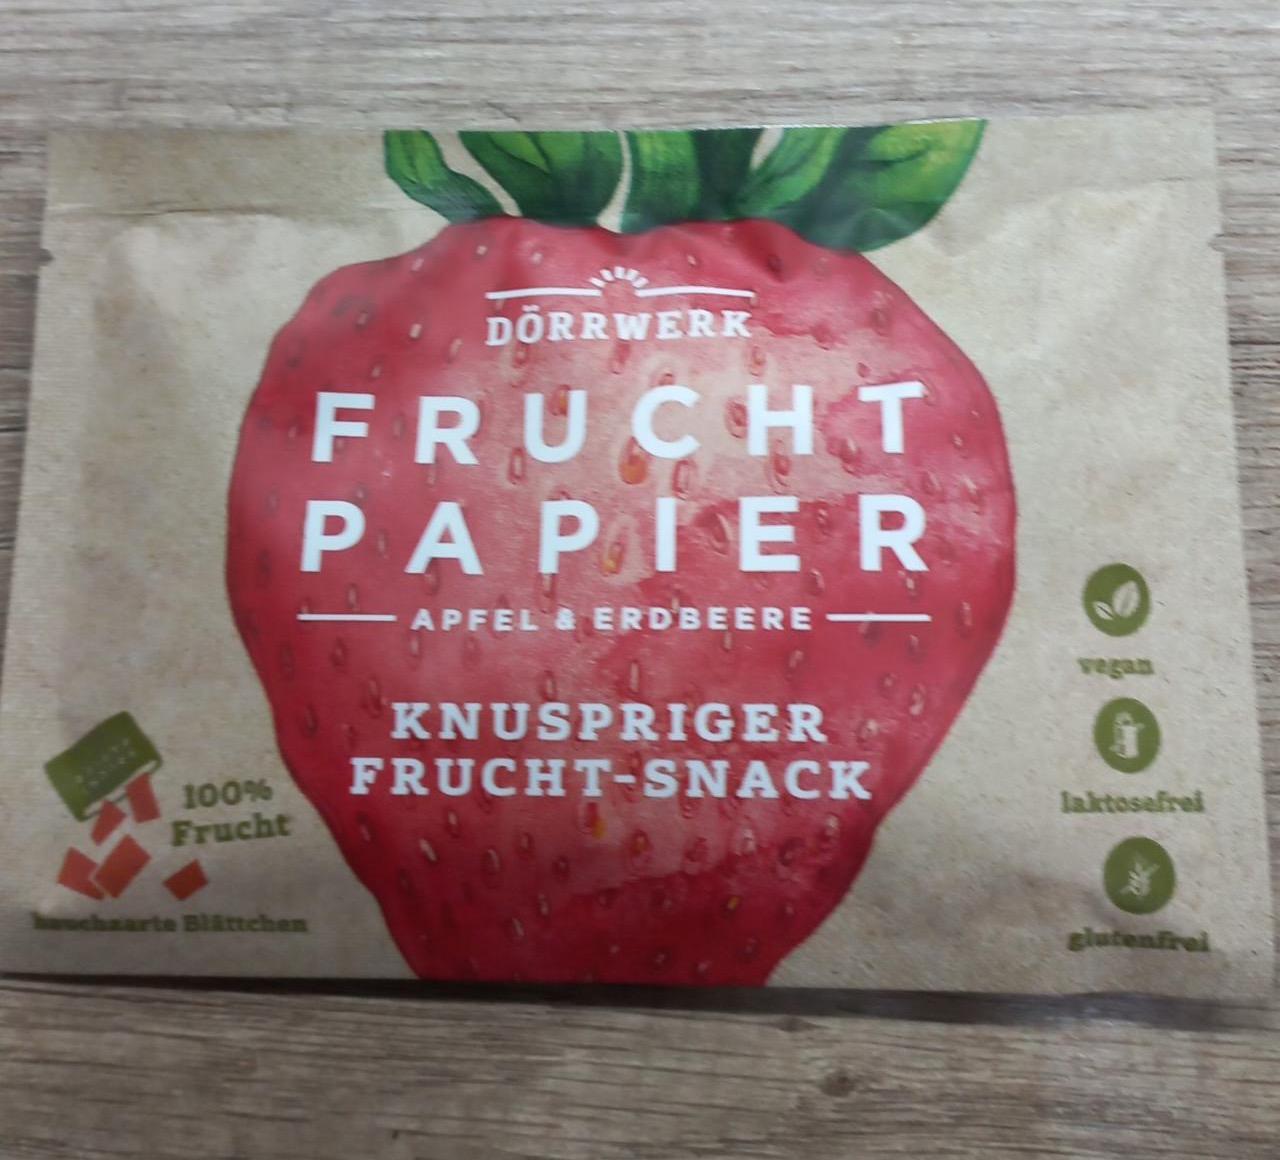 Képek - Frucht papier Apfel & erdbeere Dörrwerk